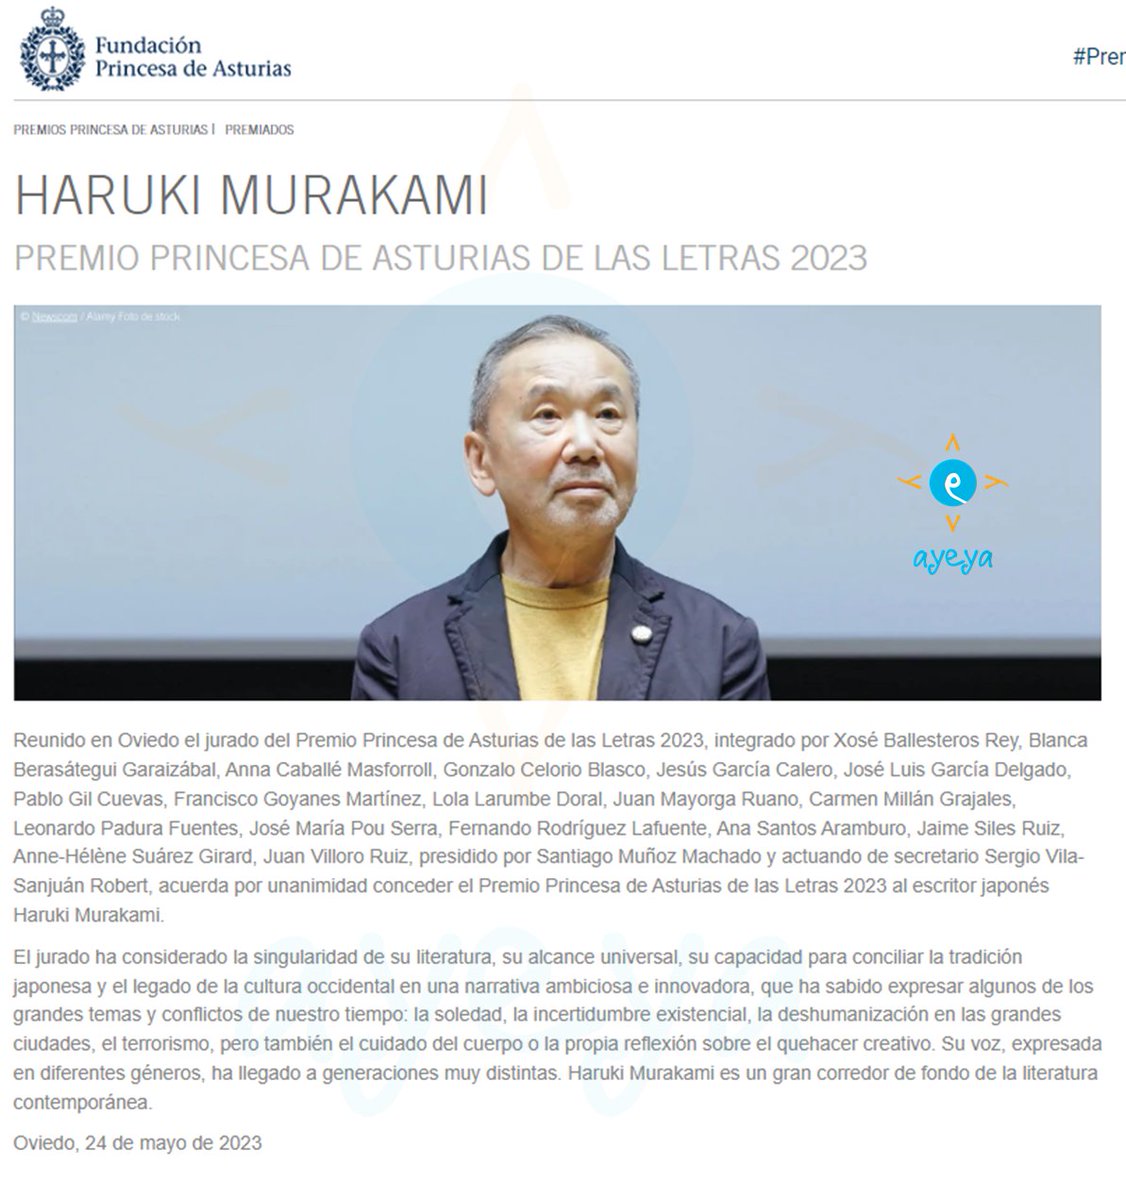 Haruki Murakami 
#premioprincesadeasturias de las letras 2023.
#PrincessofAsturiasAwards for Literature 2023.

Muy merecido/well deserved.
Bloqueo mi agenda para recibirle en octubre/scheduling my planner to meet him in October. 

Enhorabuena/Congratulations @harukimurakami_